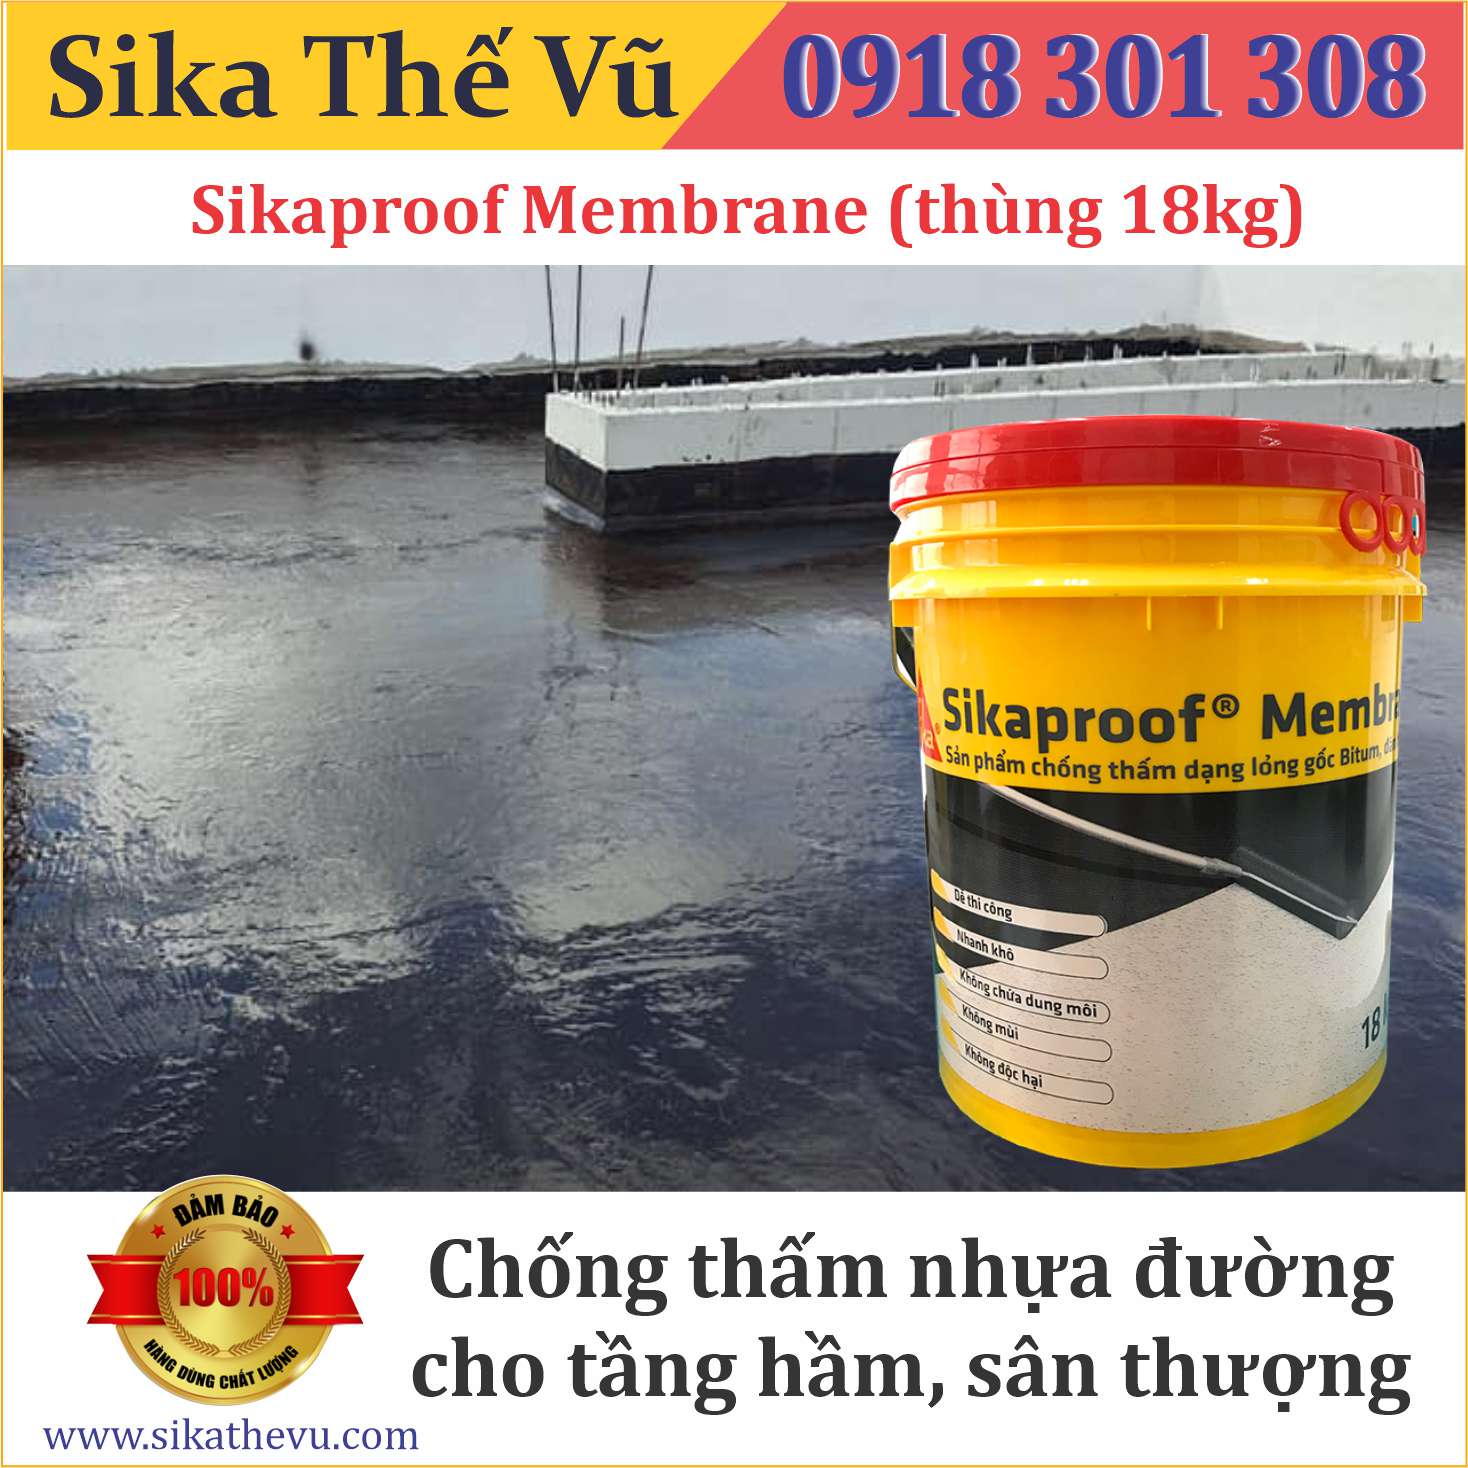 Chống thấm nhựa đường cho tầng hầm, sân thượng - Sikaproof Membrane (thùng 18kg)